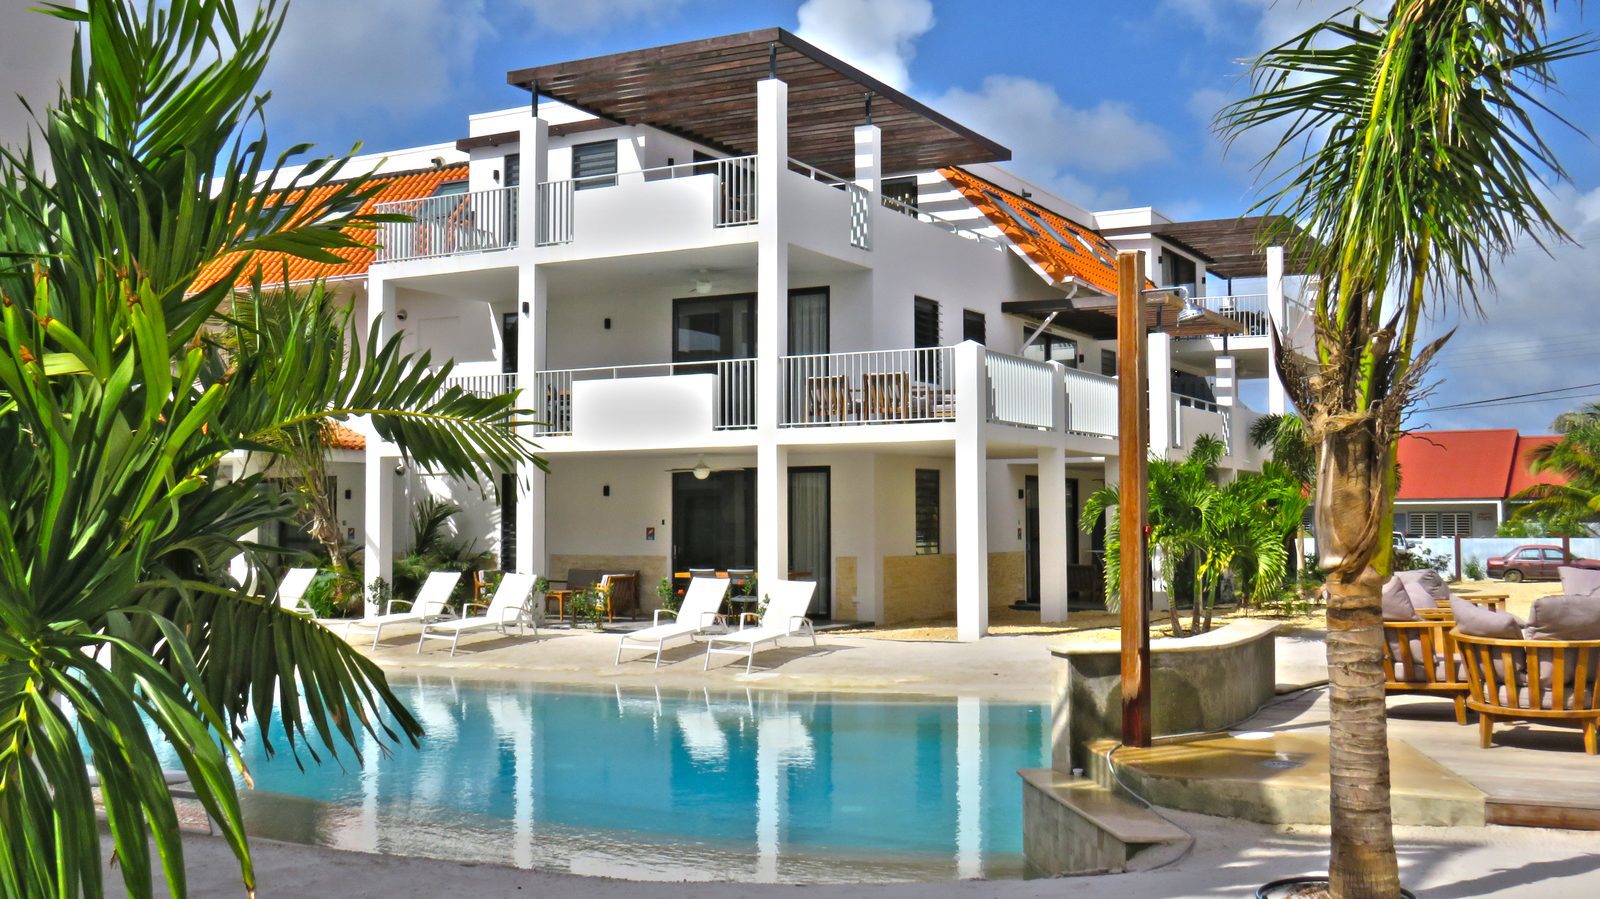 Urlaub machen auf Bonaire? Bei uns im Resort Bonaire ist dies möglich! Wir bieten verschiedene Apartments an, die luxuriös mit allem, was man braucht, eingerichtet sind.